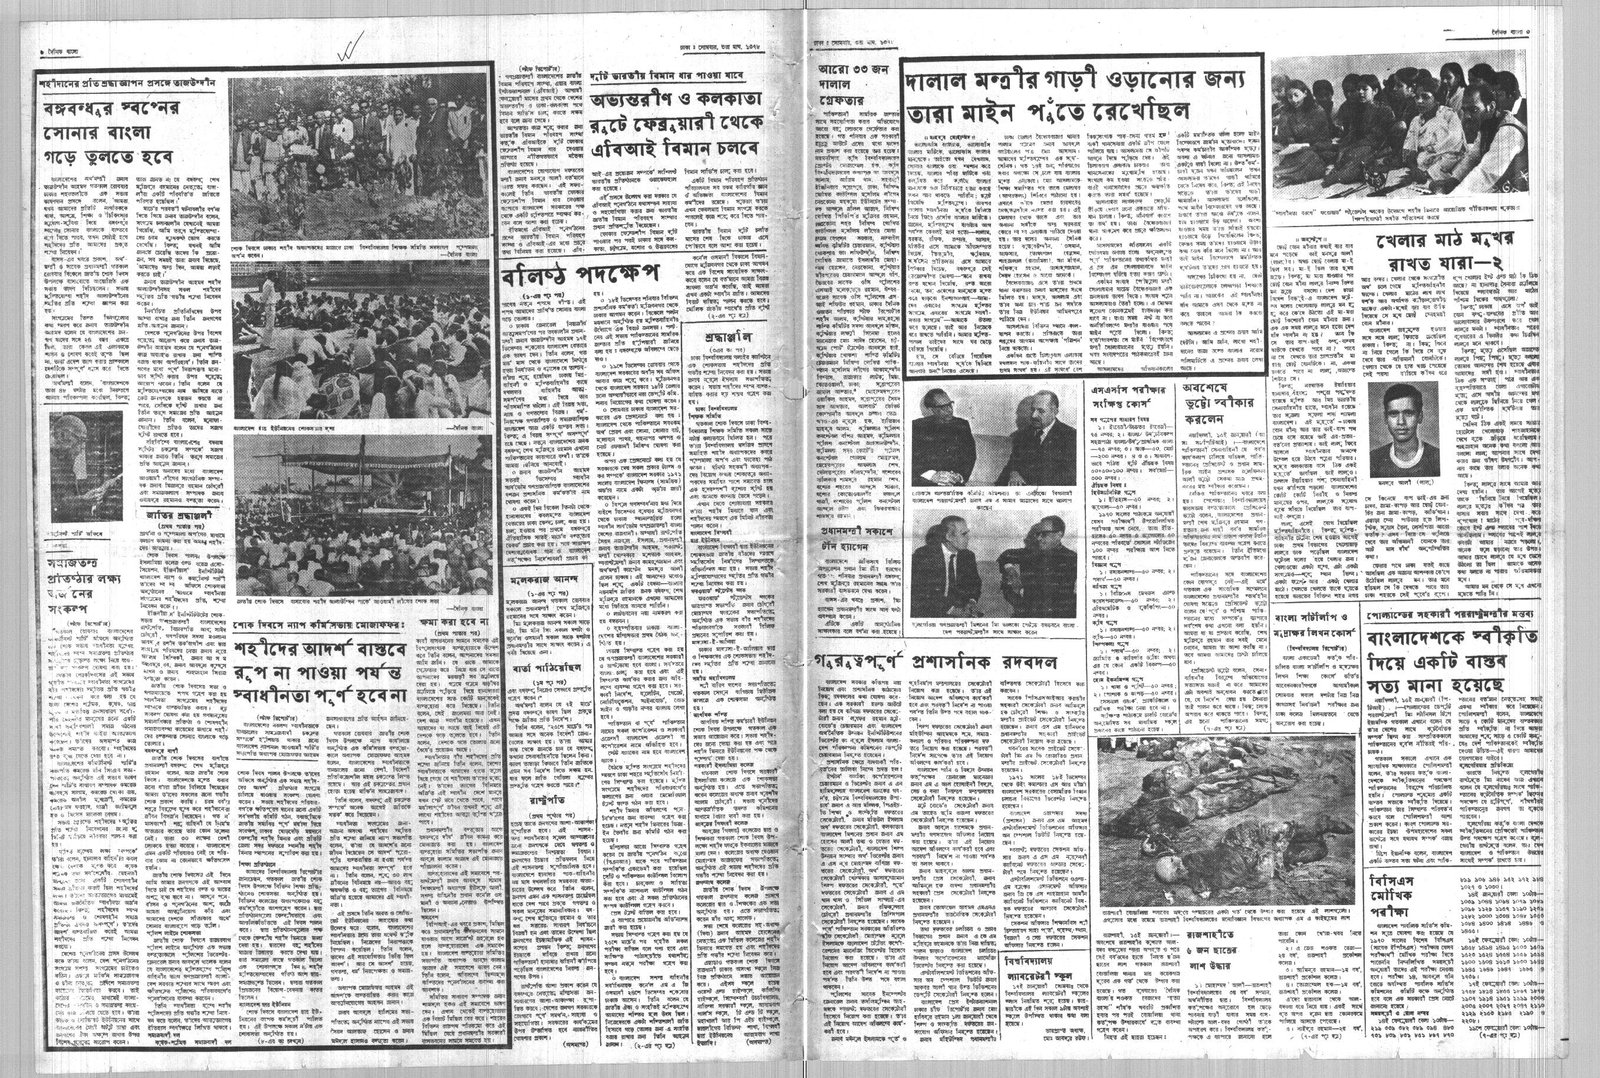 17JAN1972-DAINIK BANGLA-Regular-Page 3 and 6